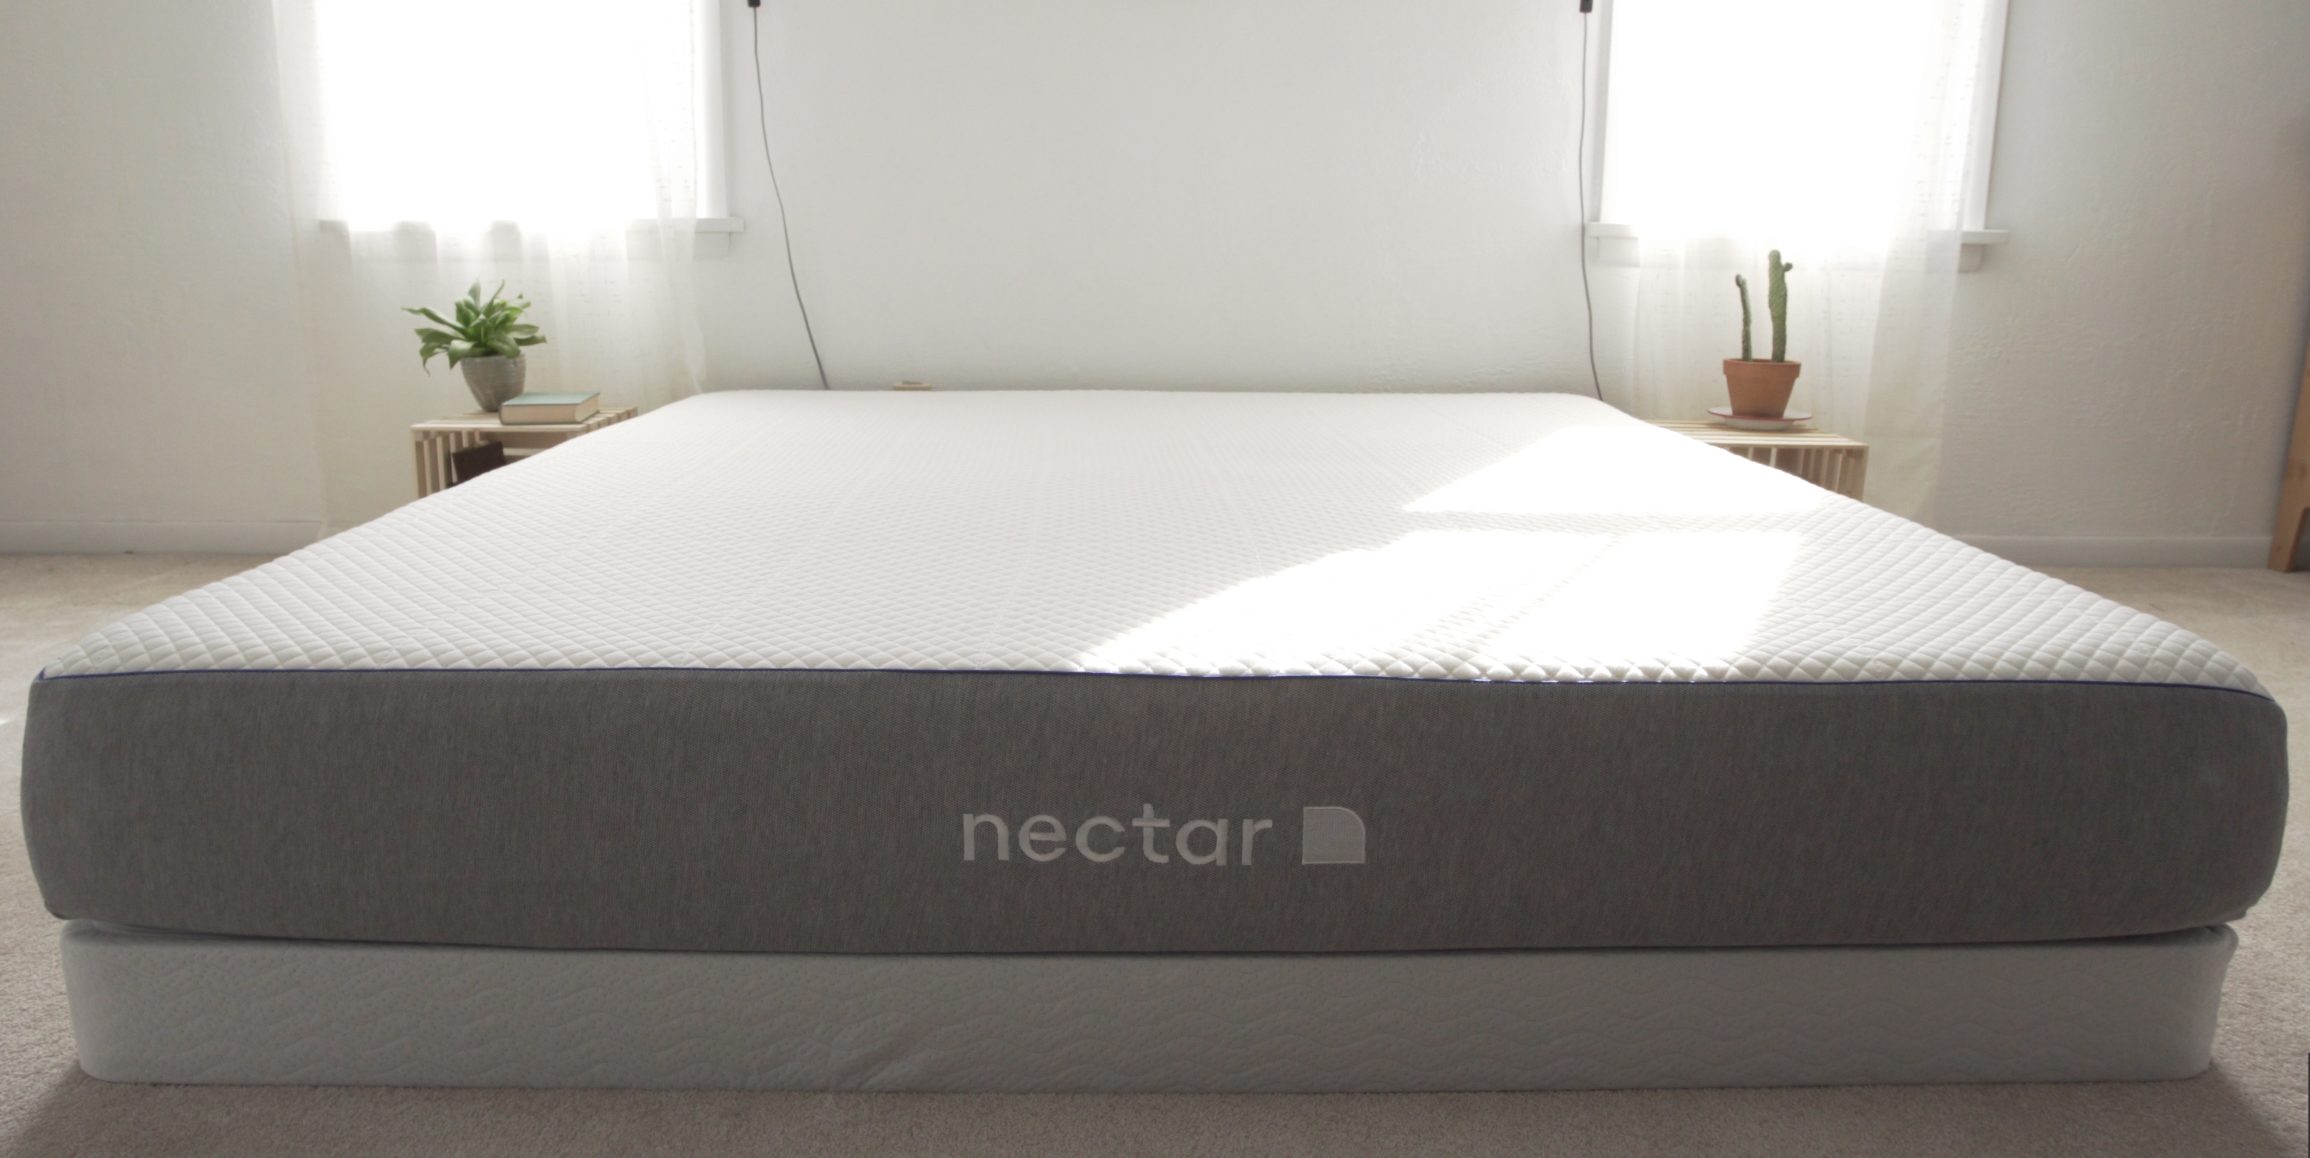 nectar mattress review quen